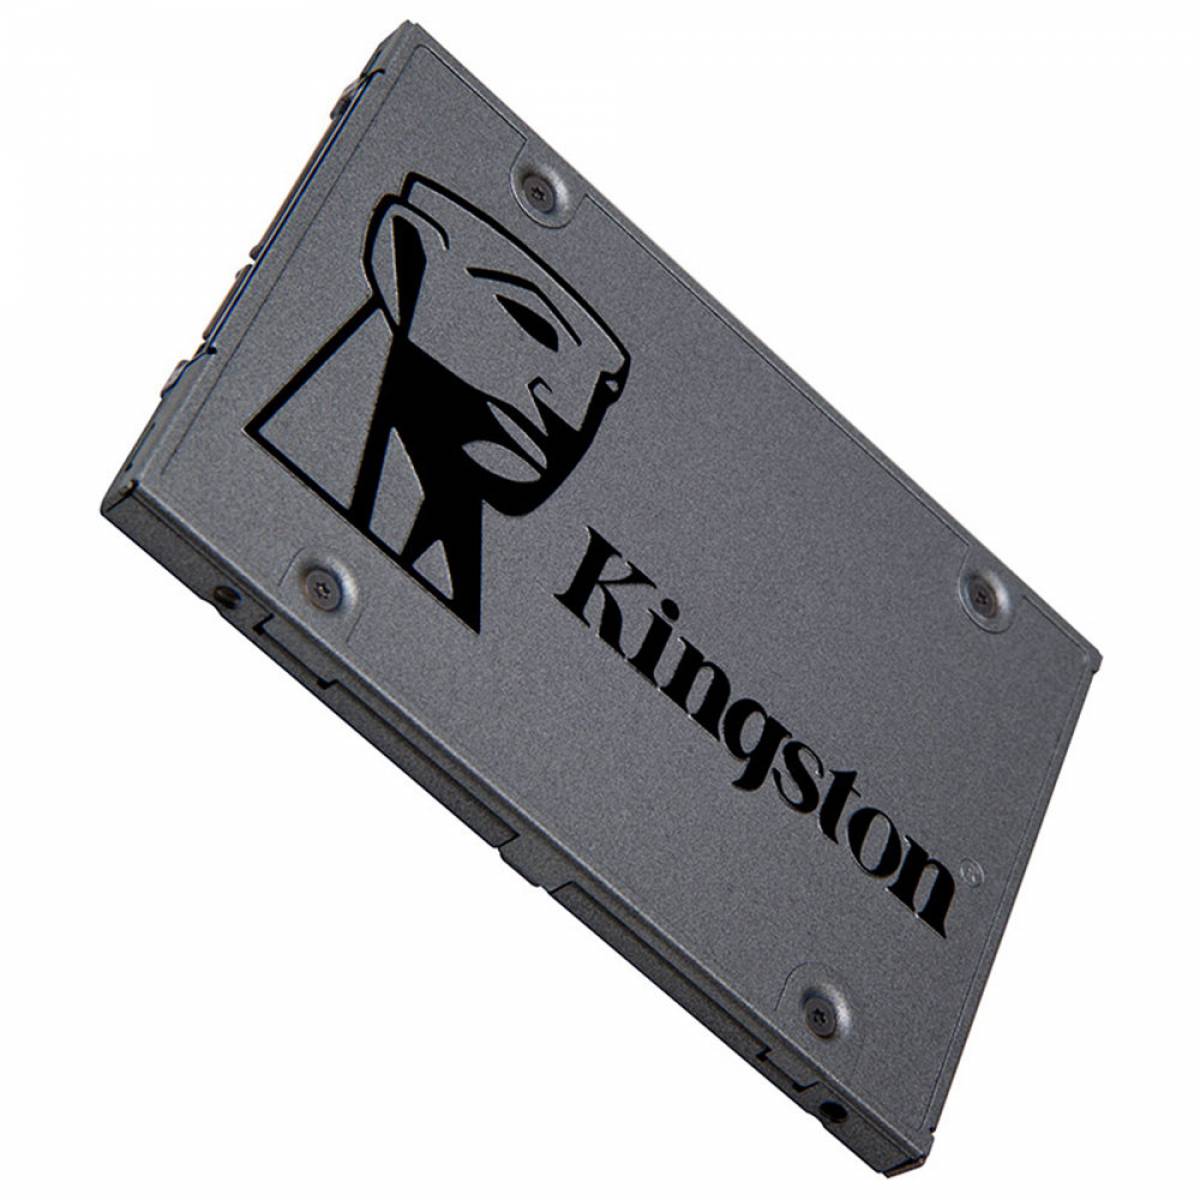 ð¥ Disco duro SSD Solido 480Gb Kingston pc o notebooks